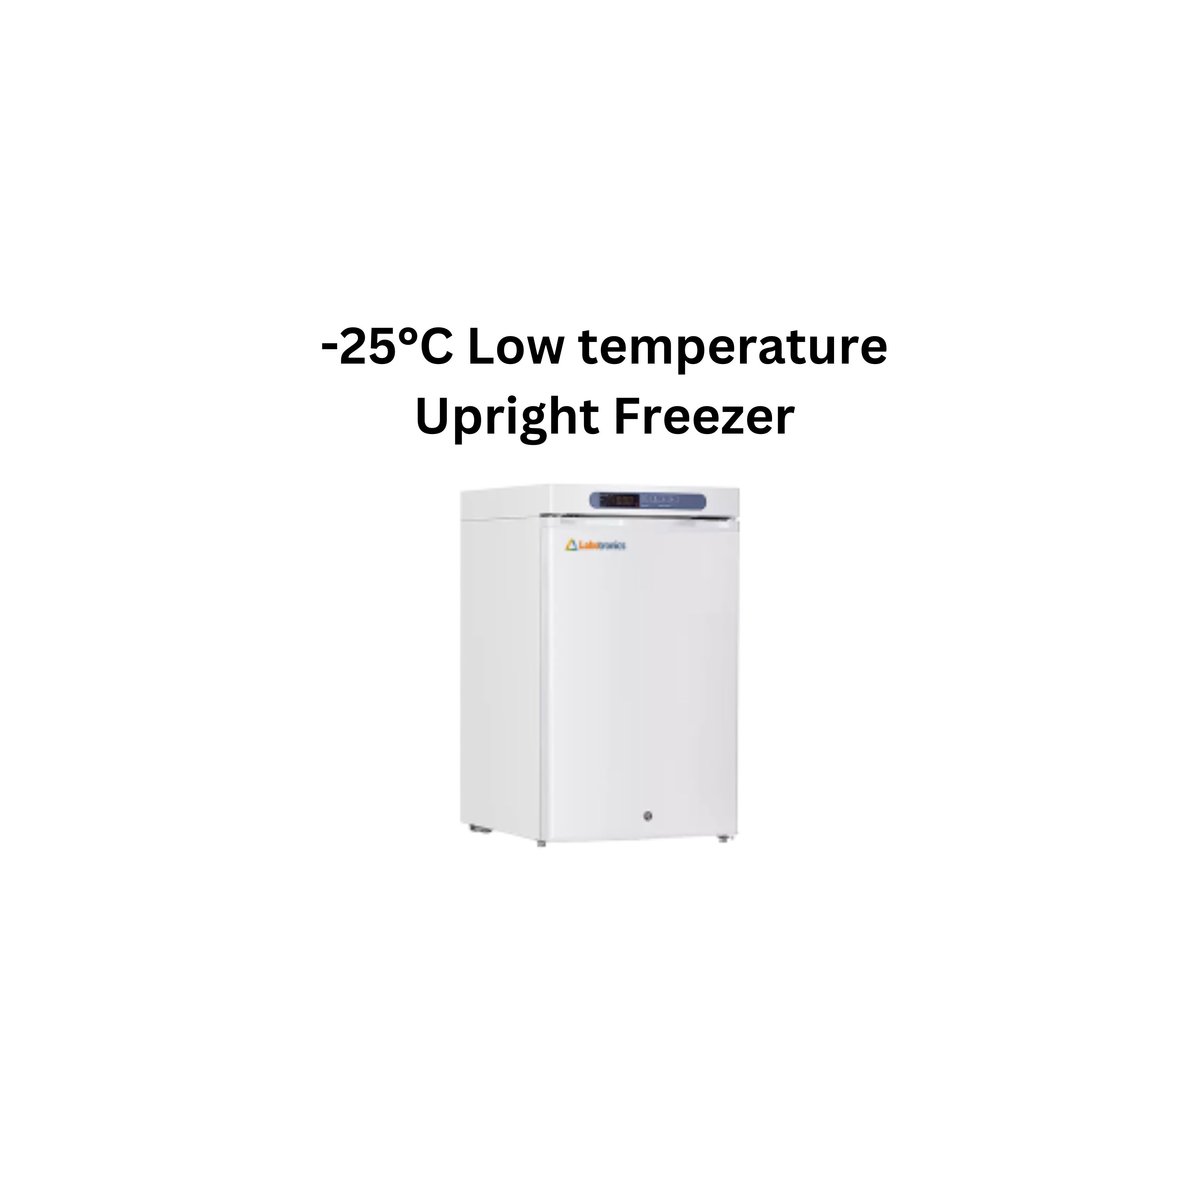 -25°C Low temperature Upright Freezer.jpg